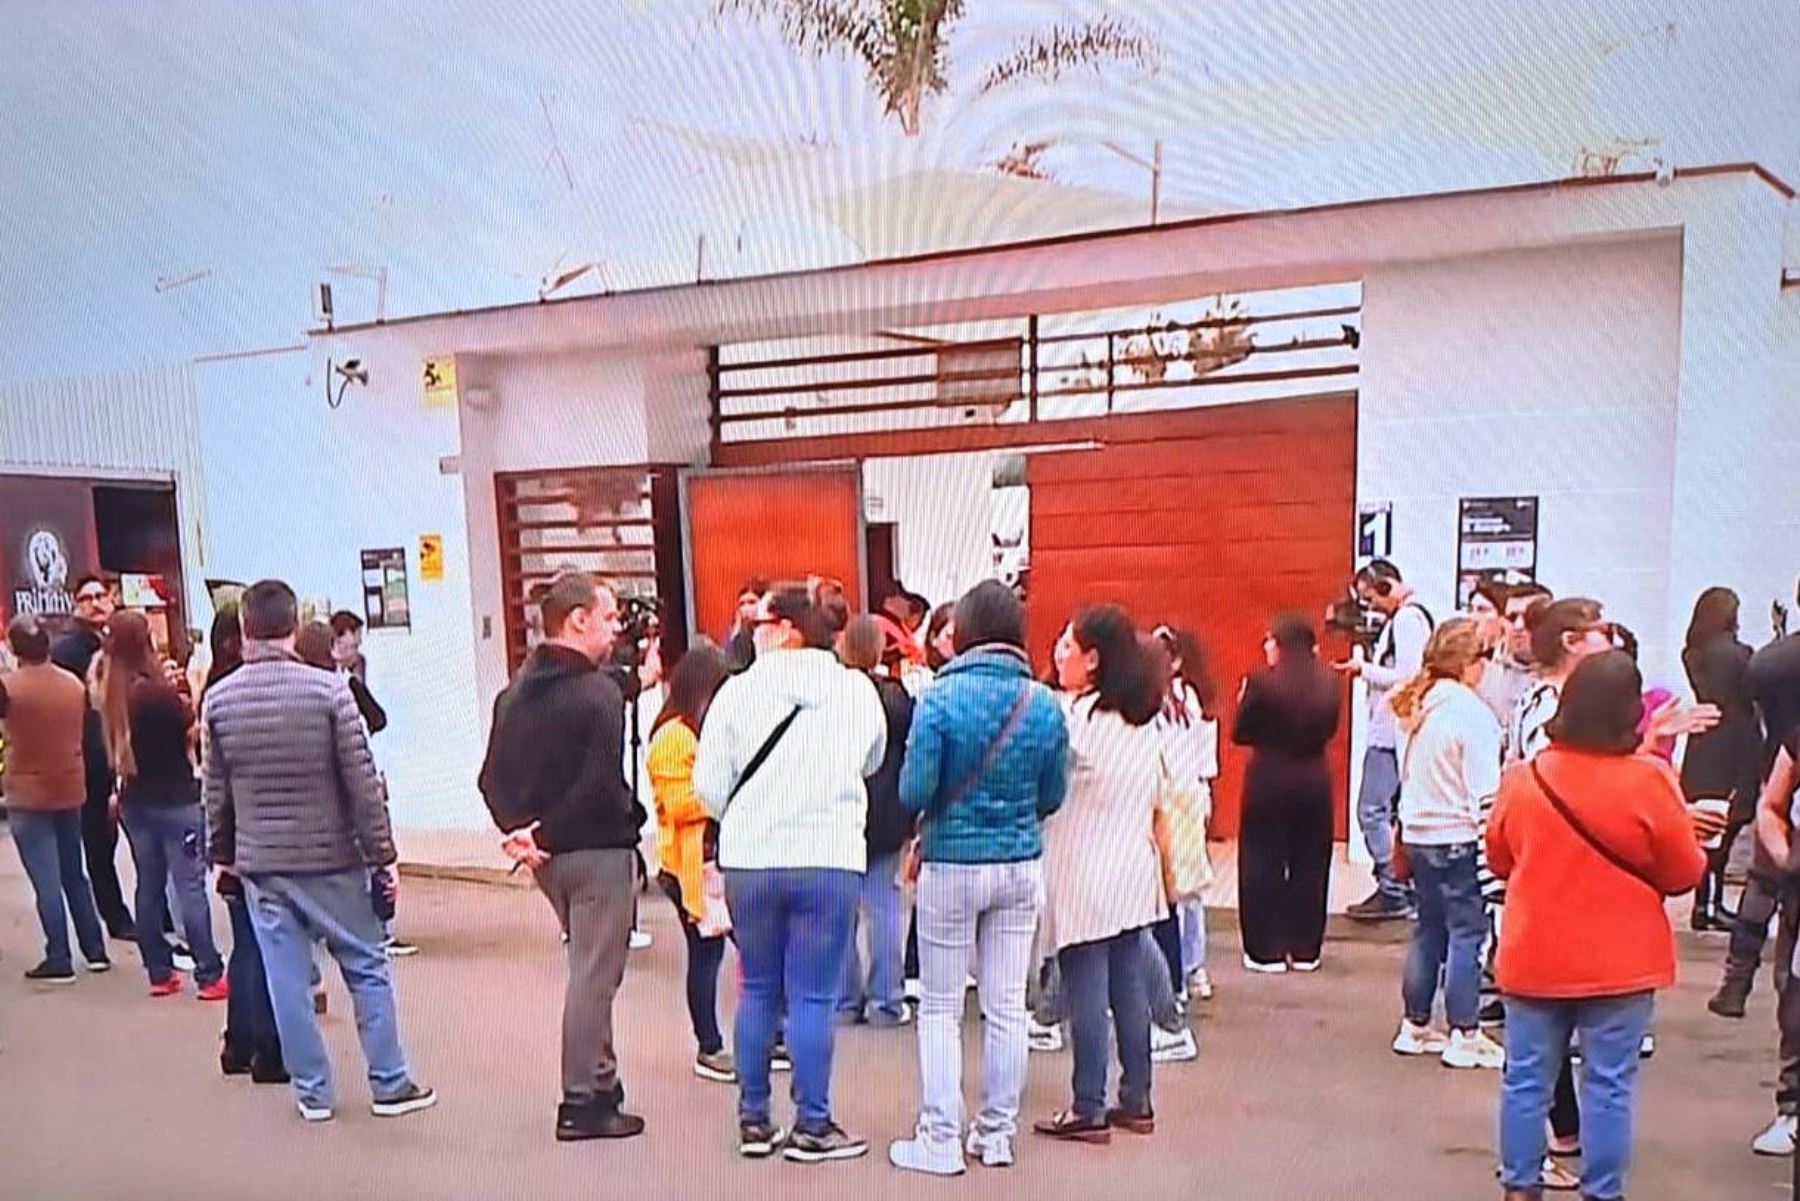 Mimp exige sanción por manipular imágenes de escolares para venderlas. Padres de familia protestan frente a colegio Saint George`s de Chorrillos. Foto: TV captura.